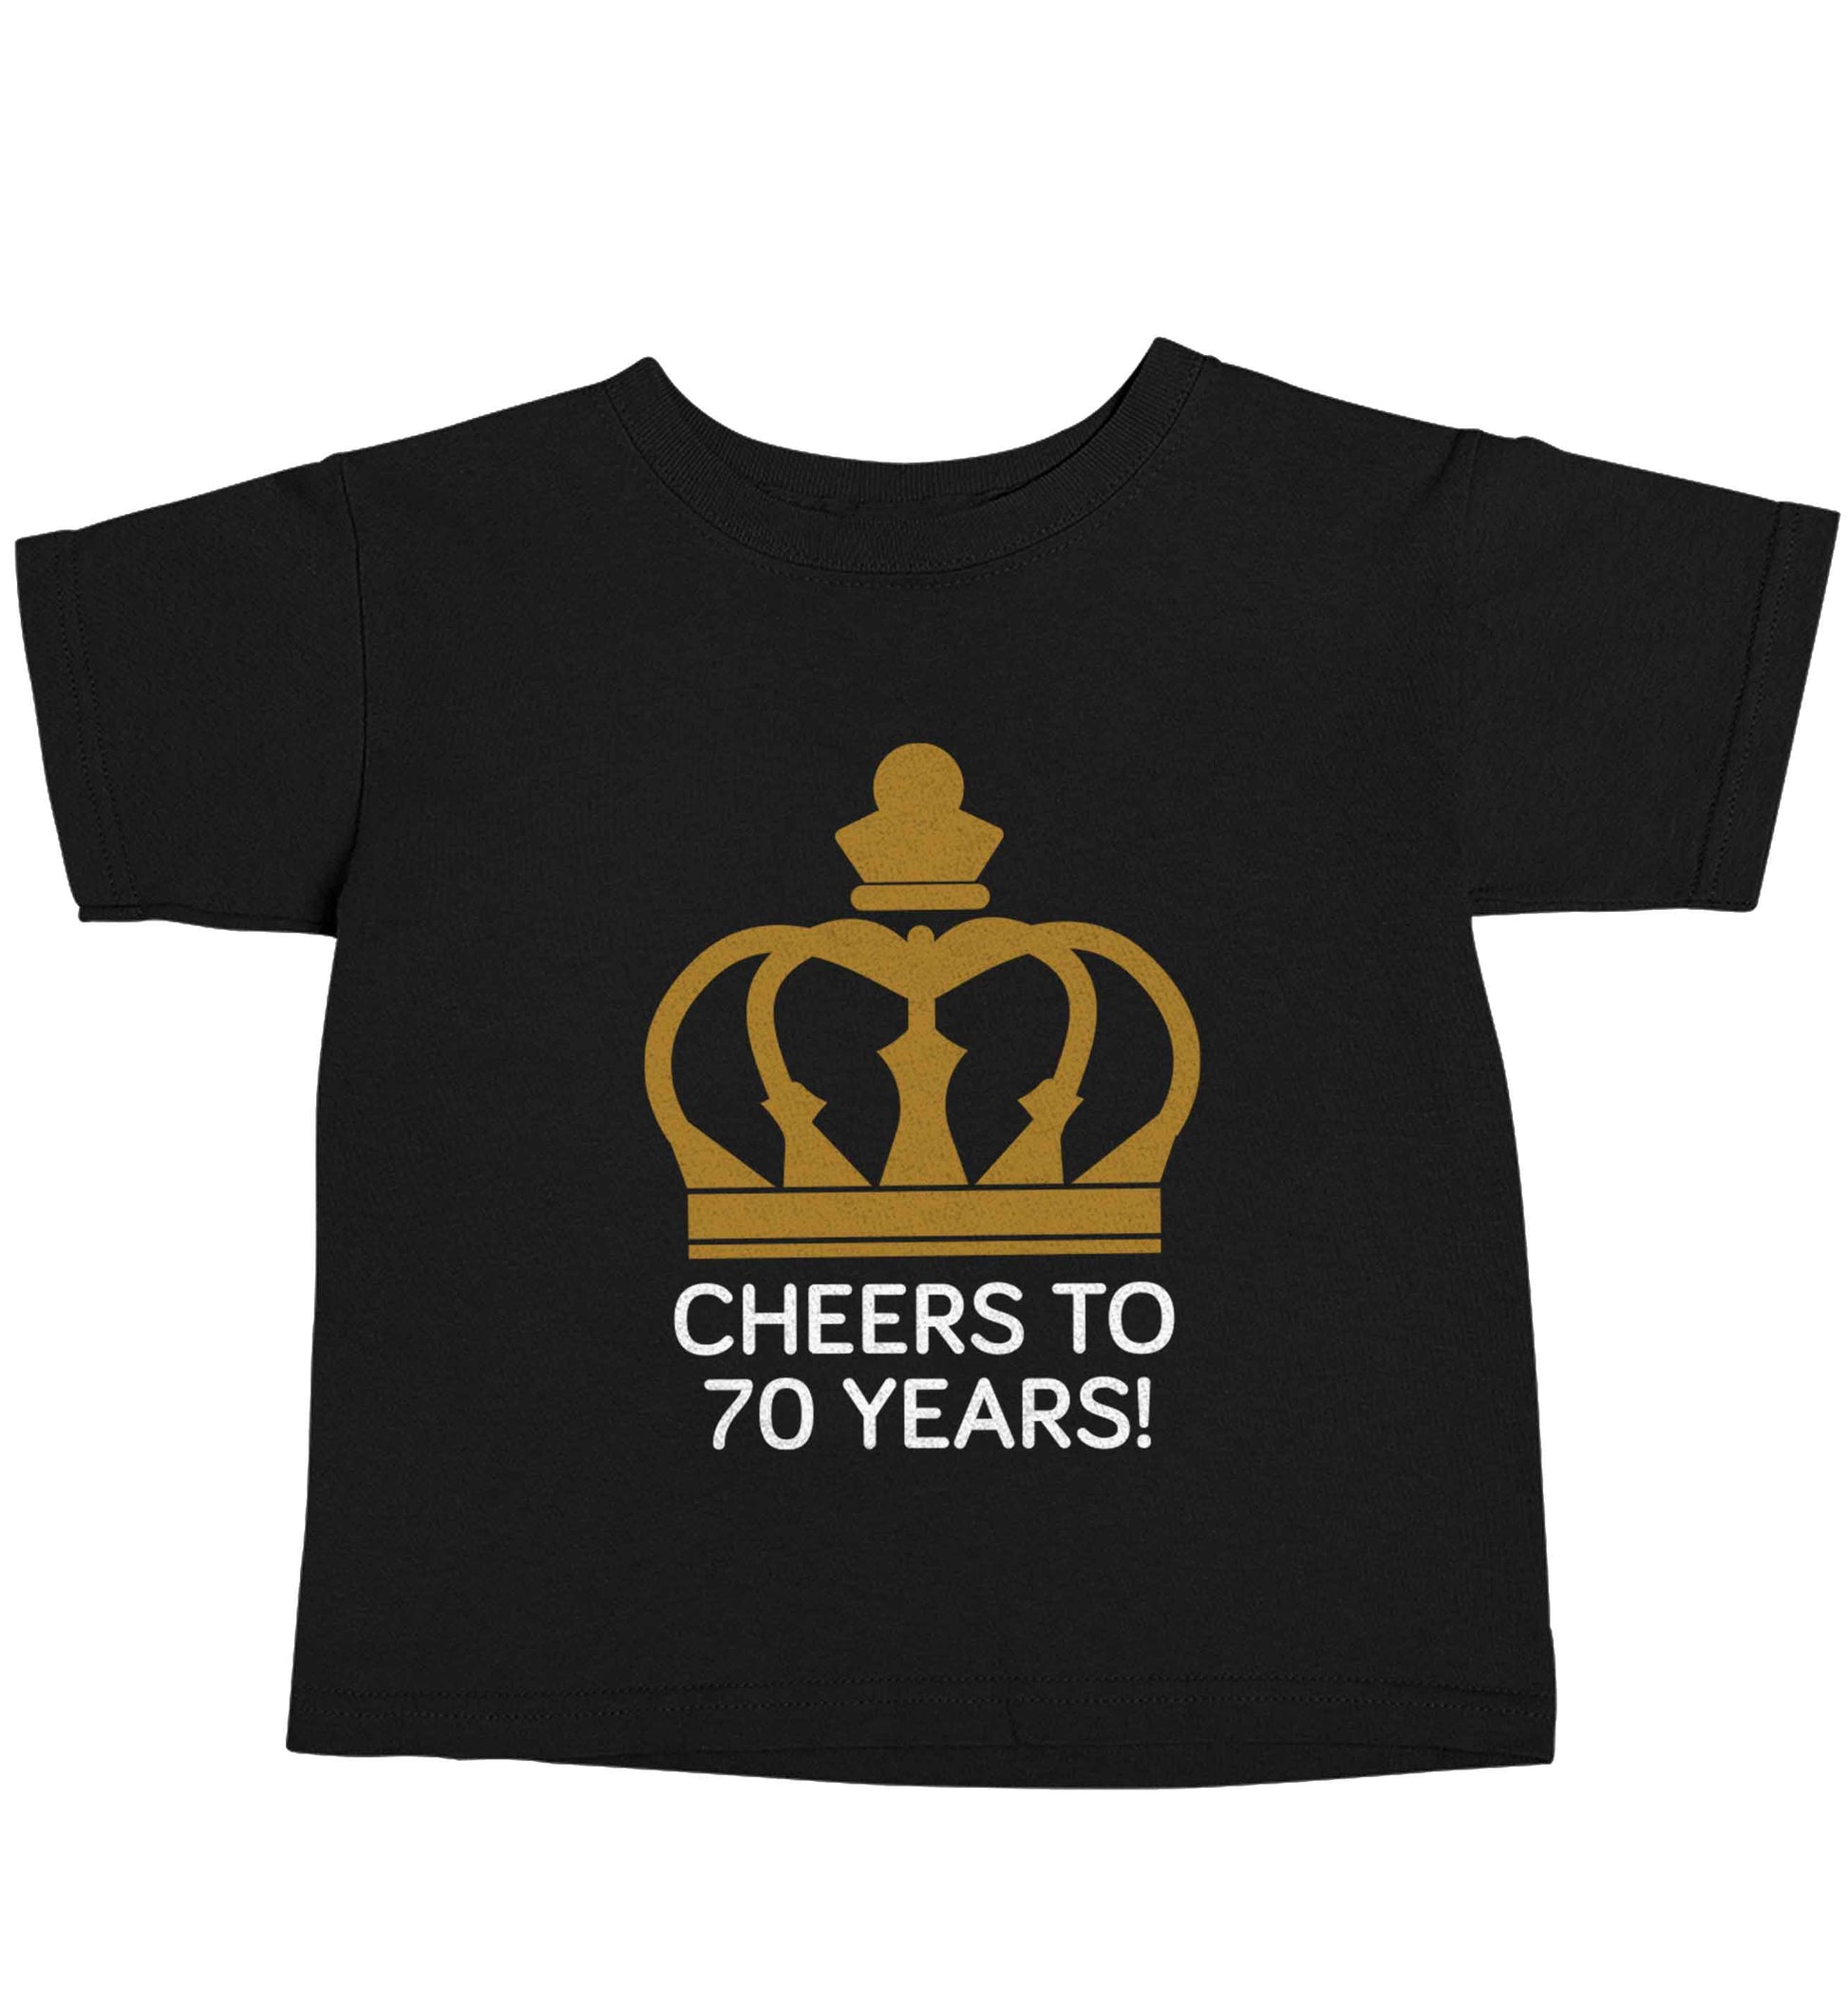 Cheers to 70 years! Black baby toddler Tshirt 2 years